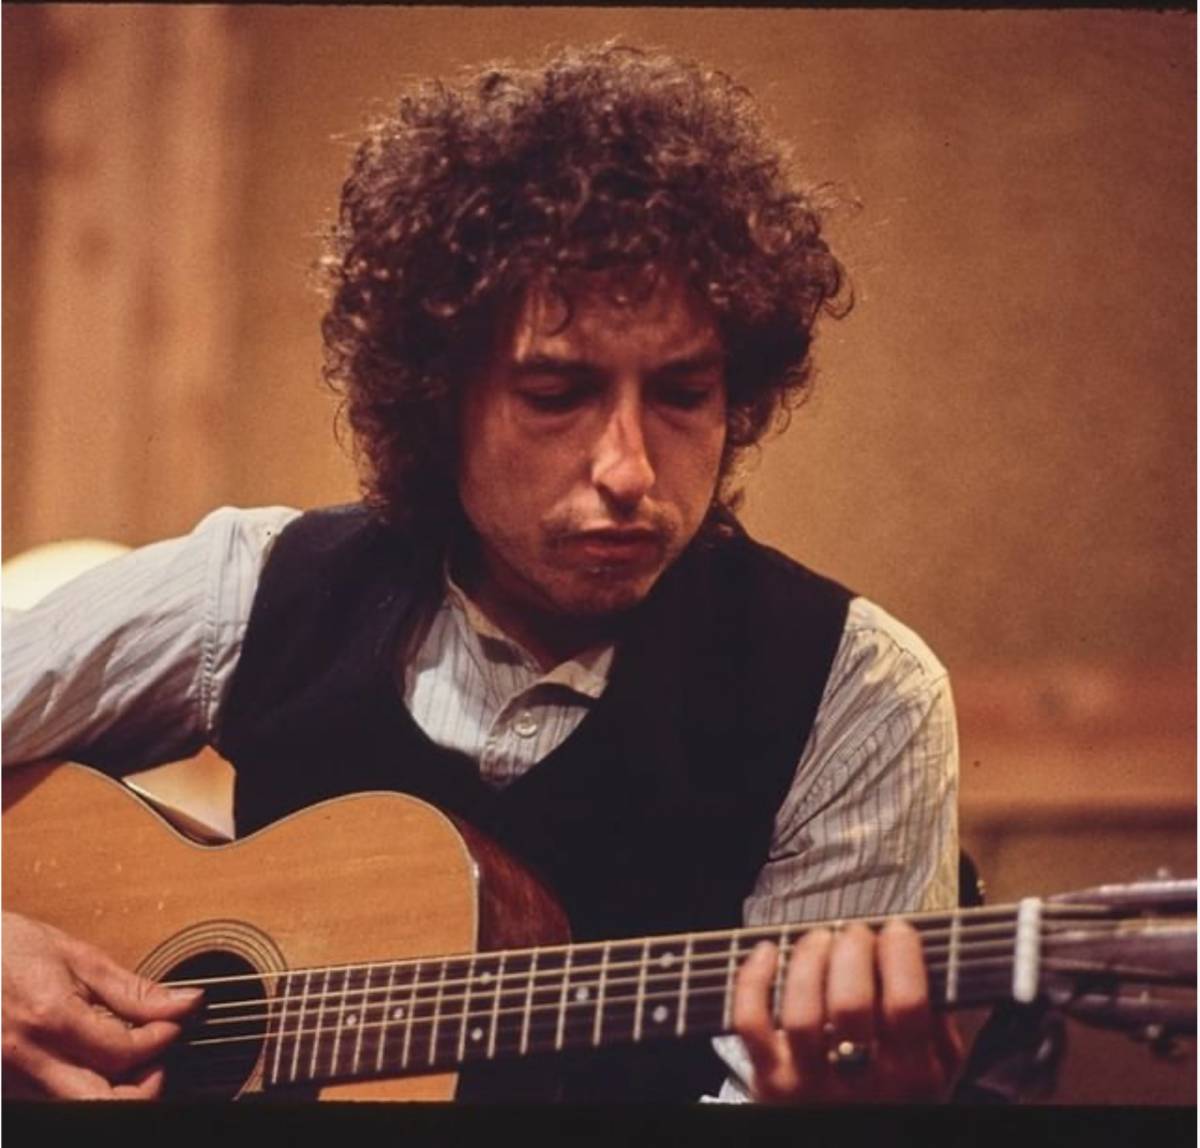 "Mi molestò quando avevo 12 anni": pesanti accuse per Bob Dylan